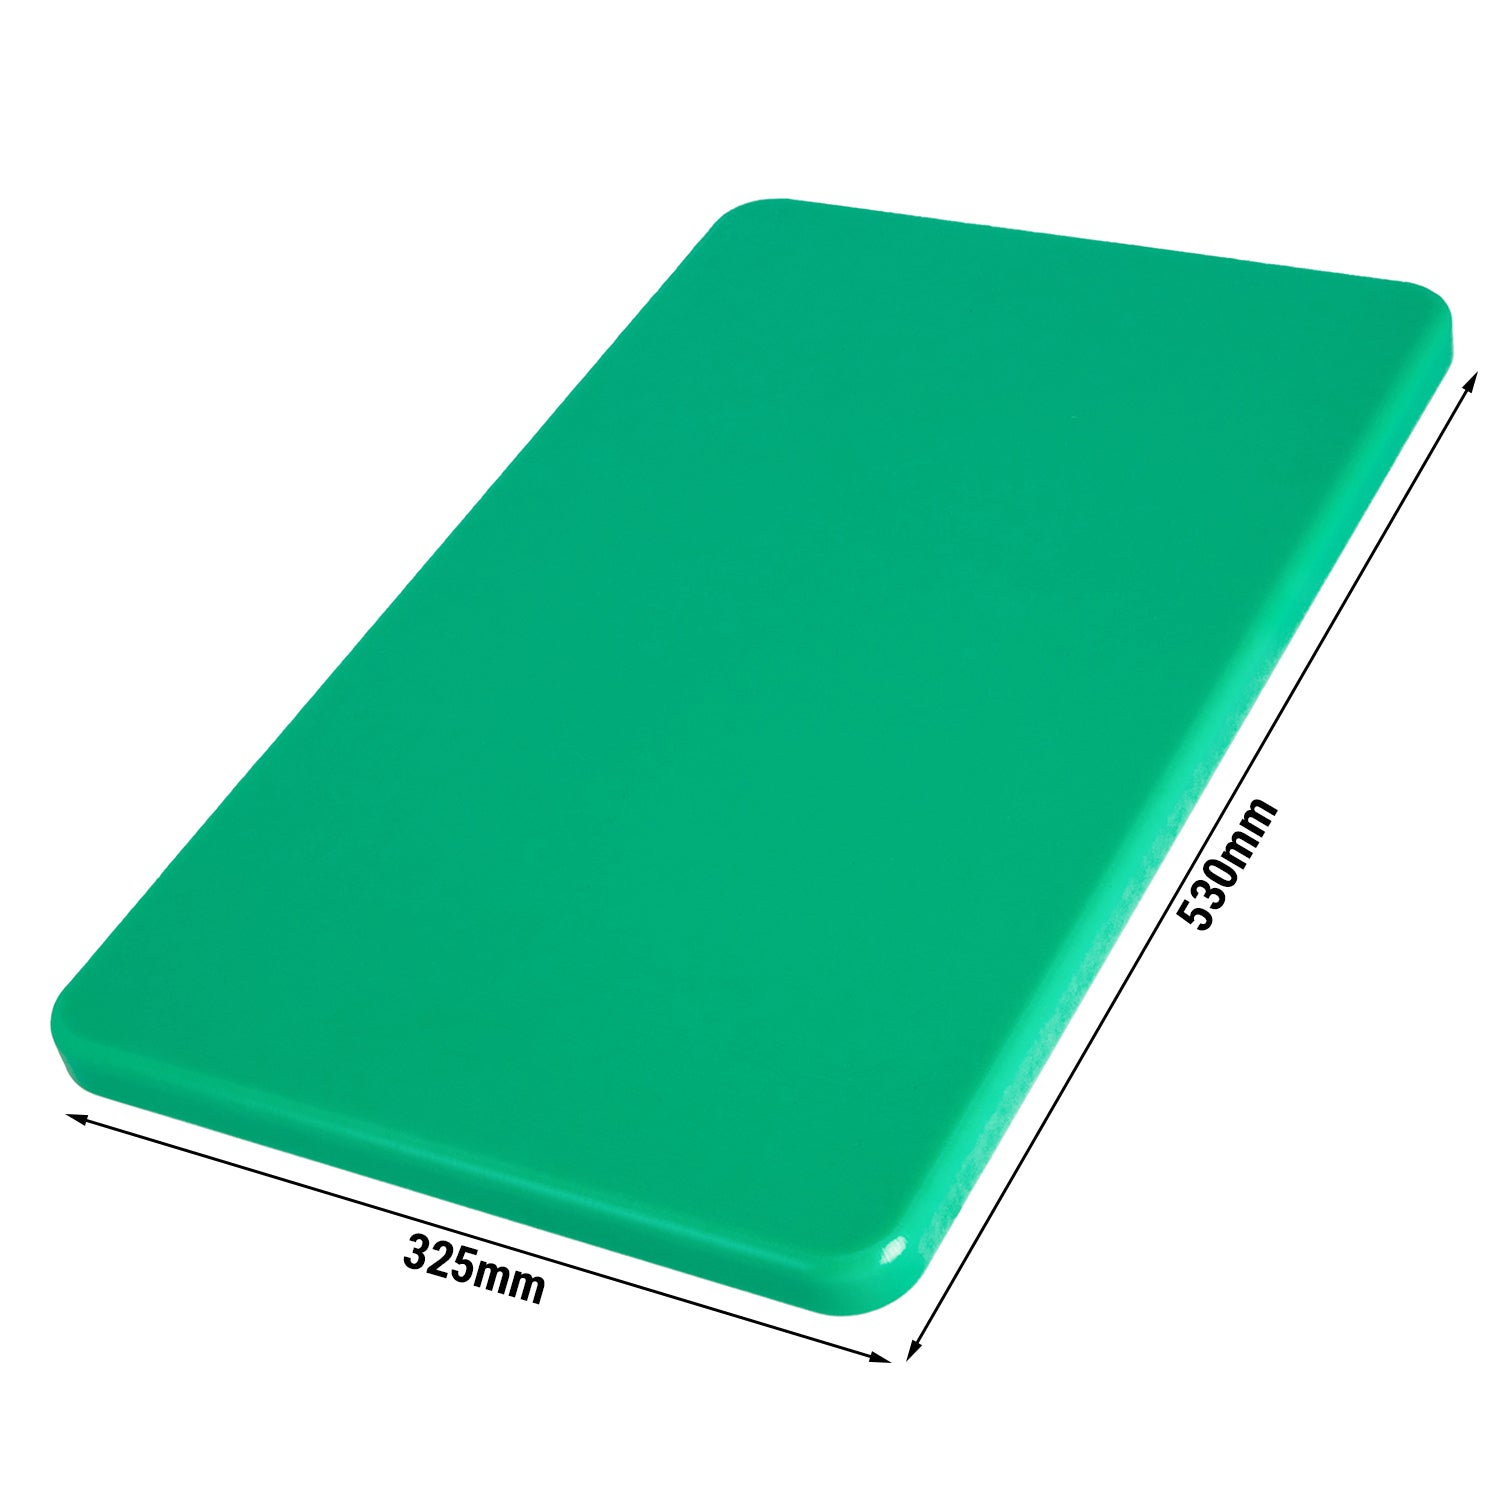 Skjærebrett - 53 x 32,5 cm - Grønn